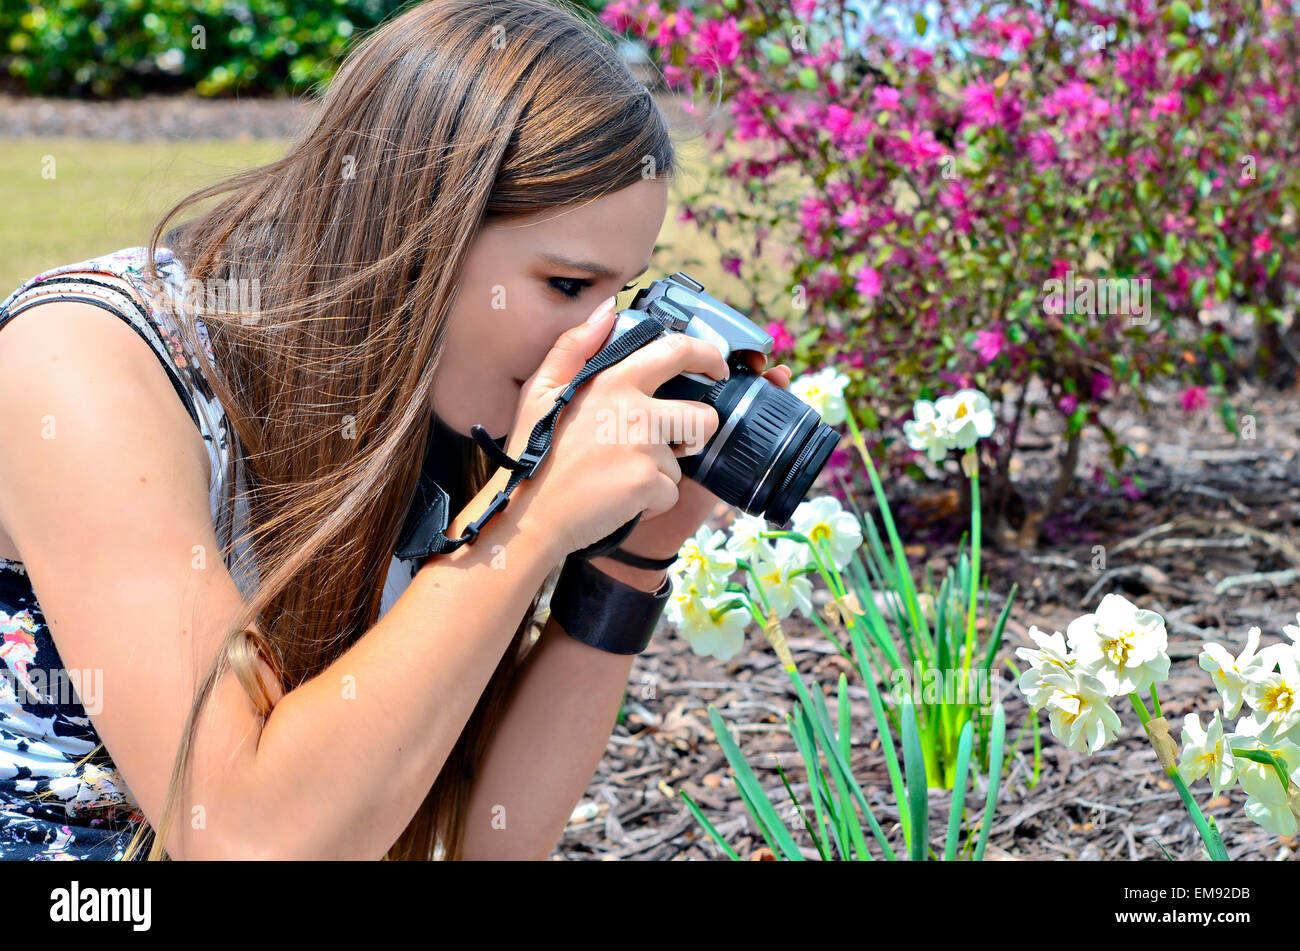 Un adolescent de prendre une photo de son jardin de fleurs. Banque D'Images